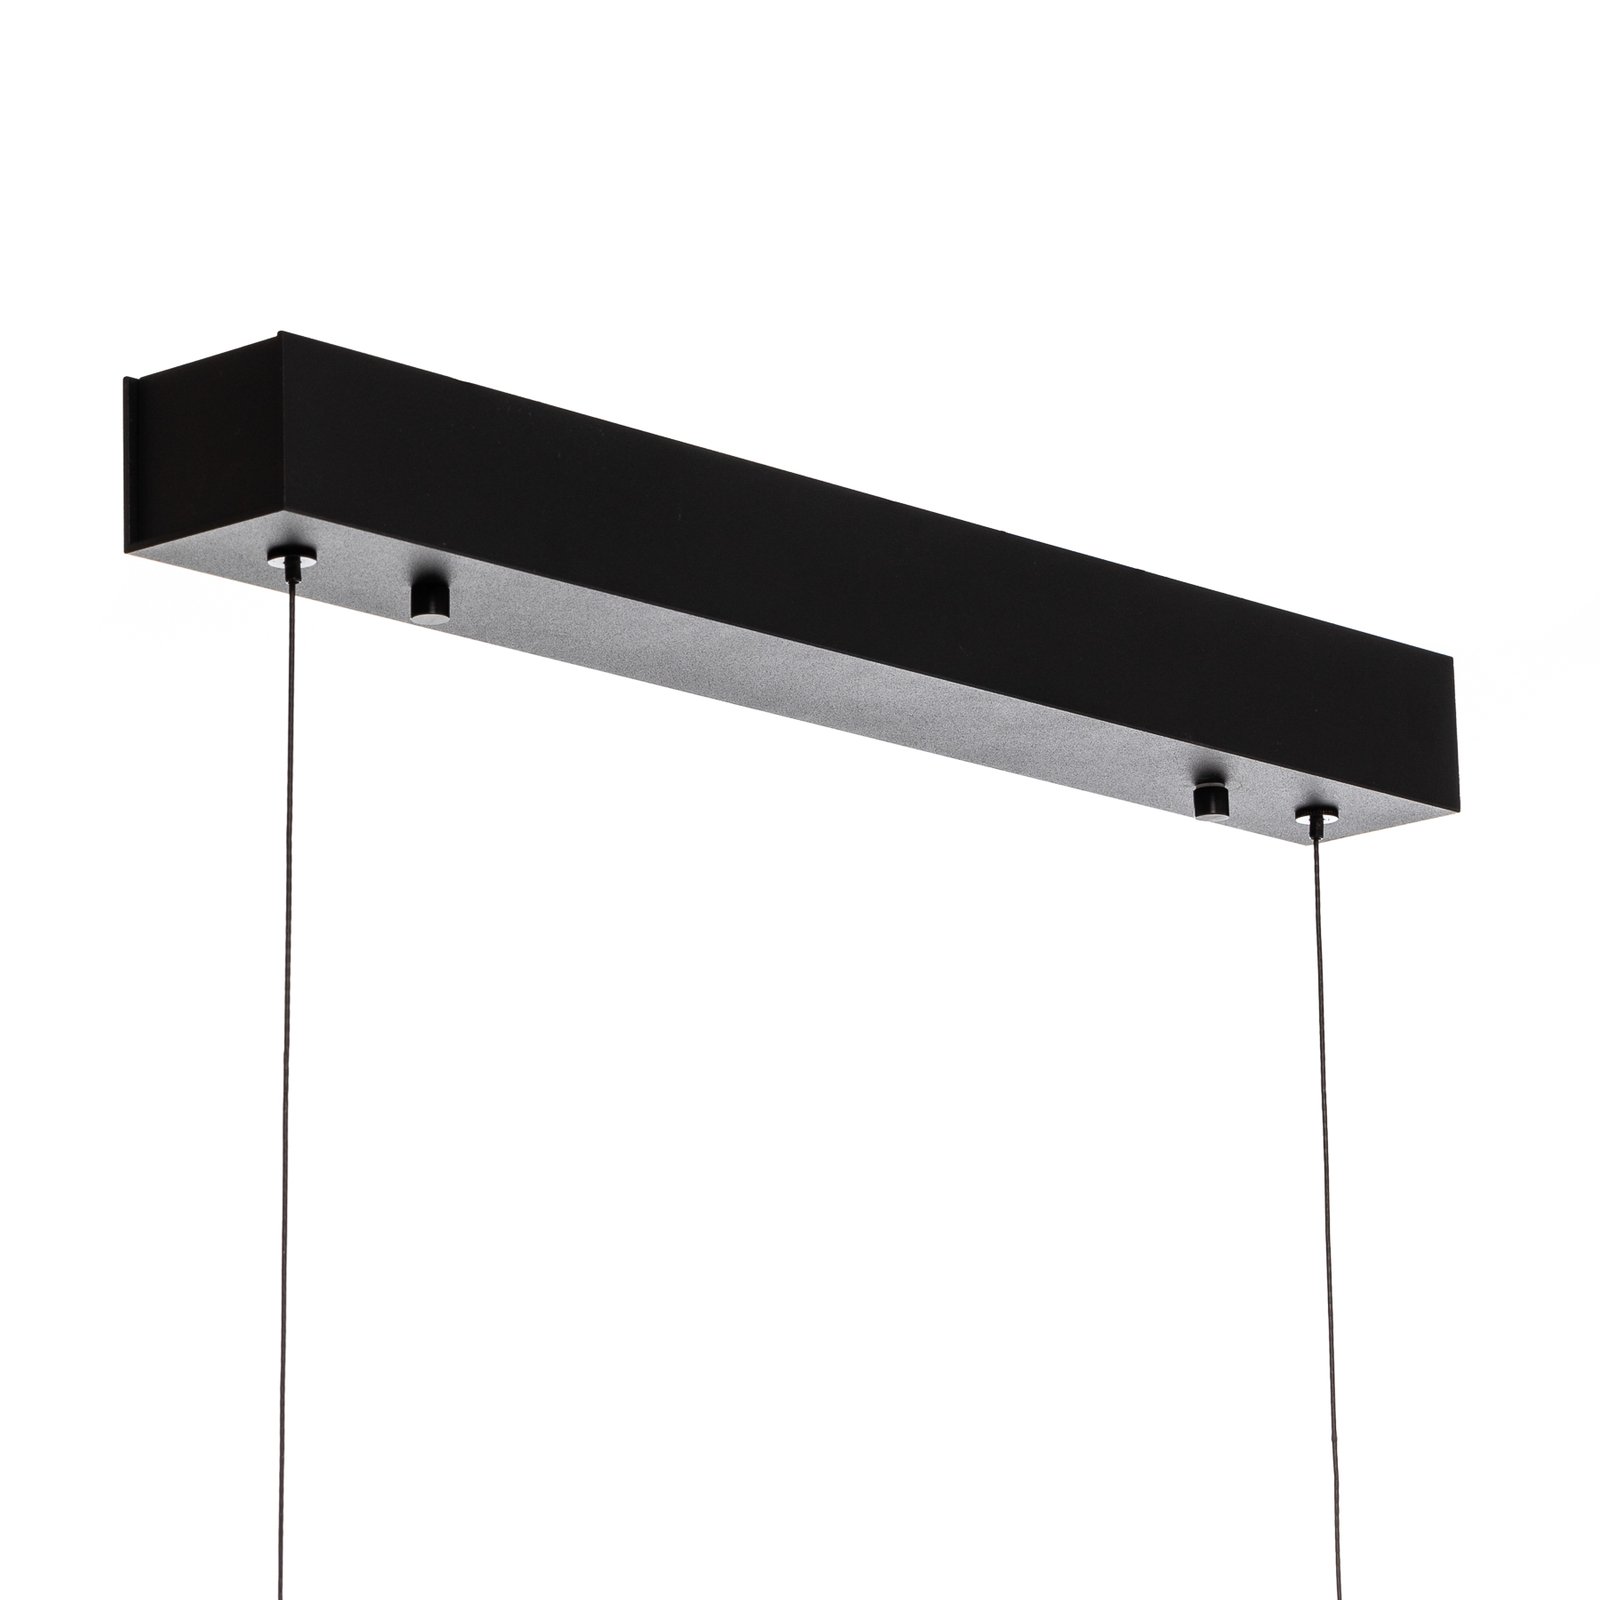 Quitani LED hanging light Kiere, oak/black, 118 cm